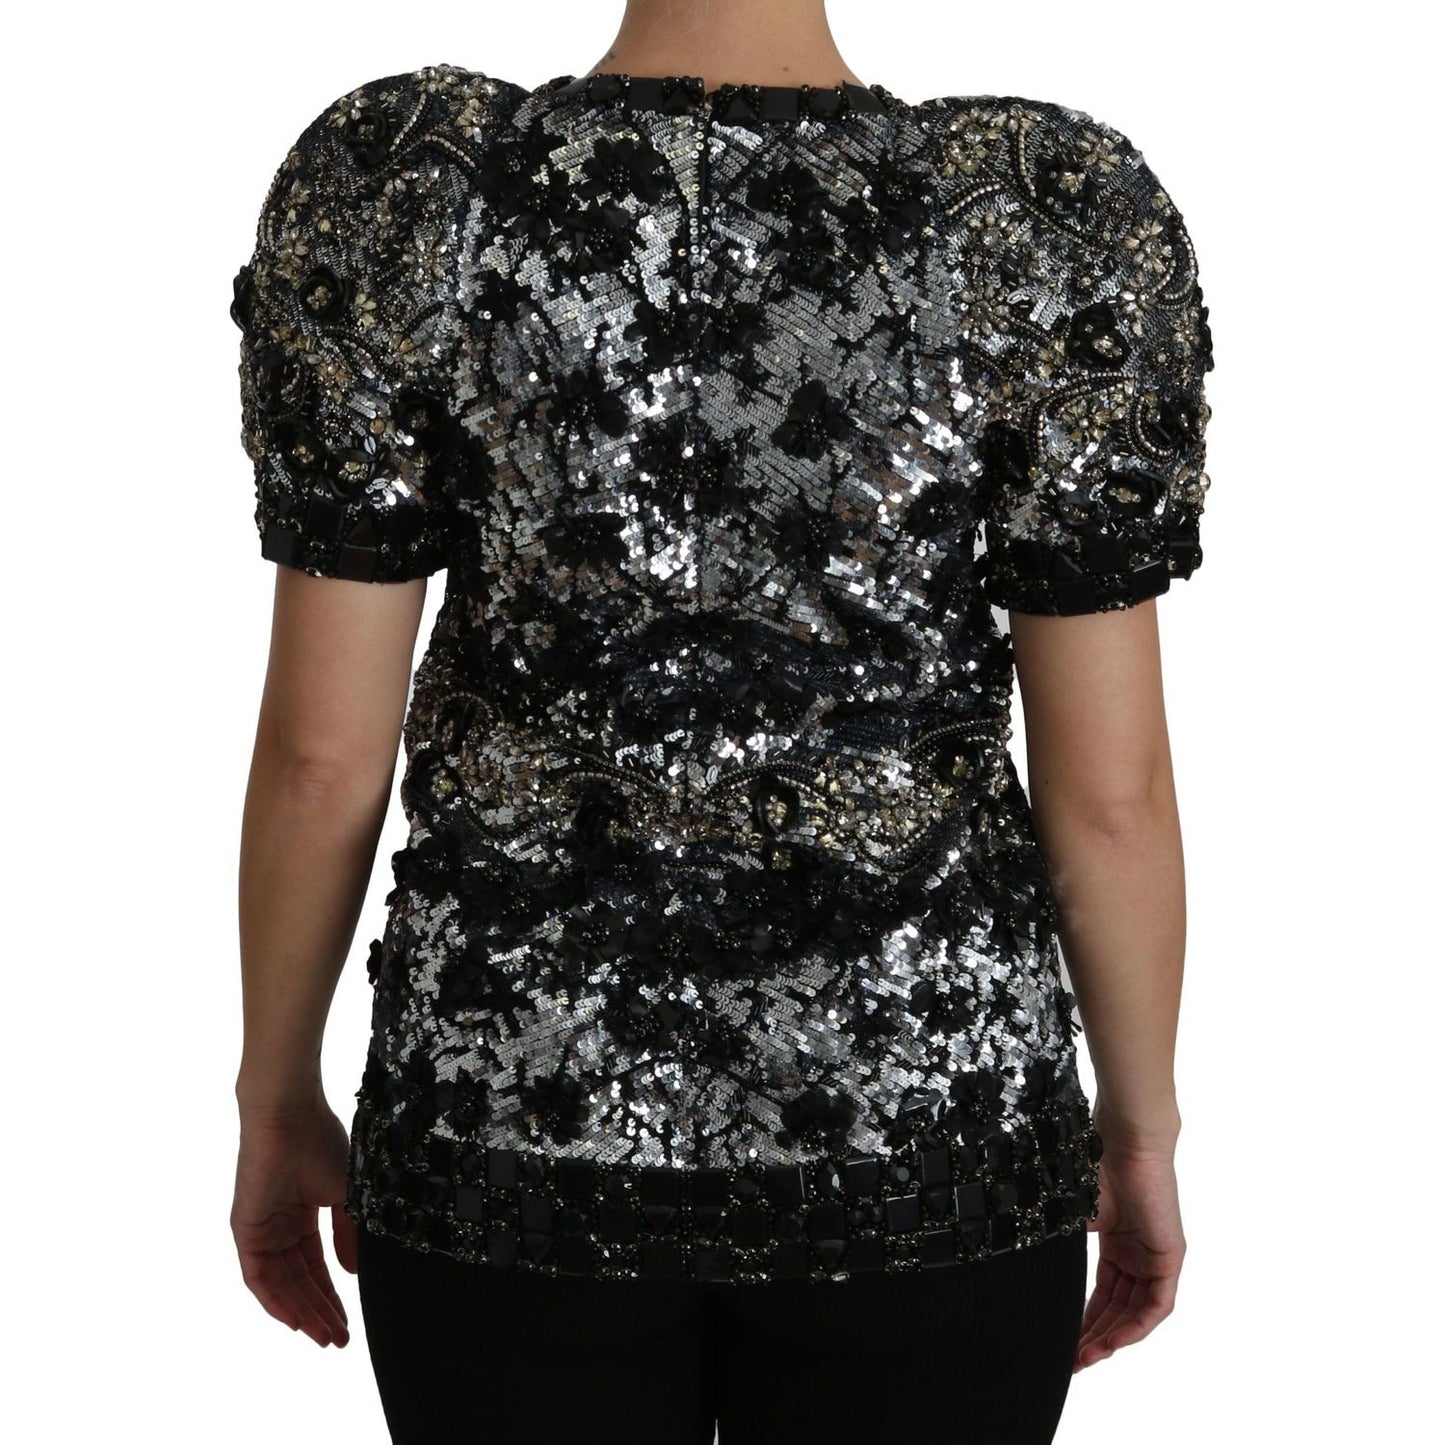 Dolce & Gabbana | Black Sequined Crystal Embellished Top Blouse | McRichard Designer Brands